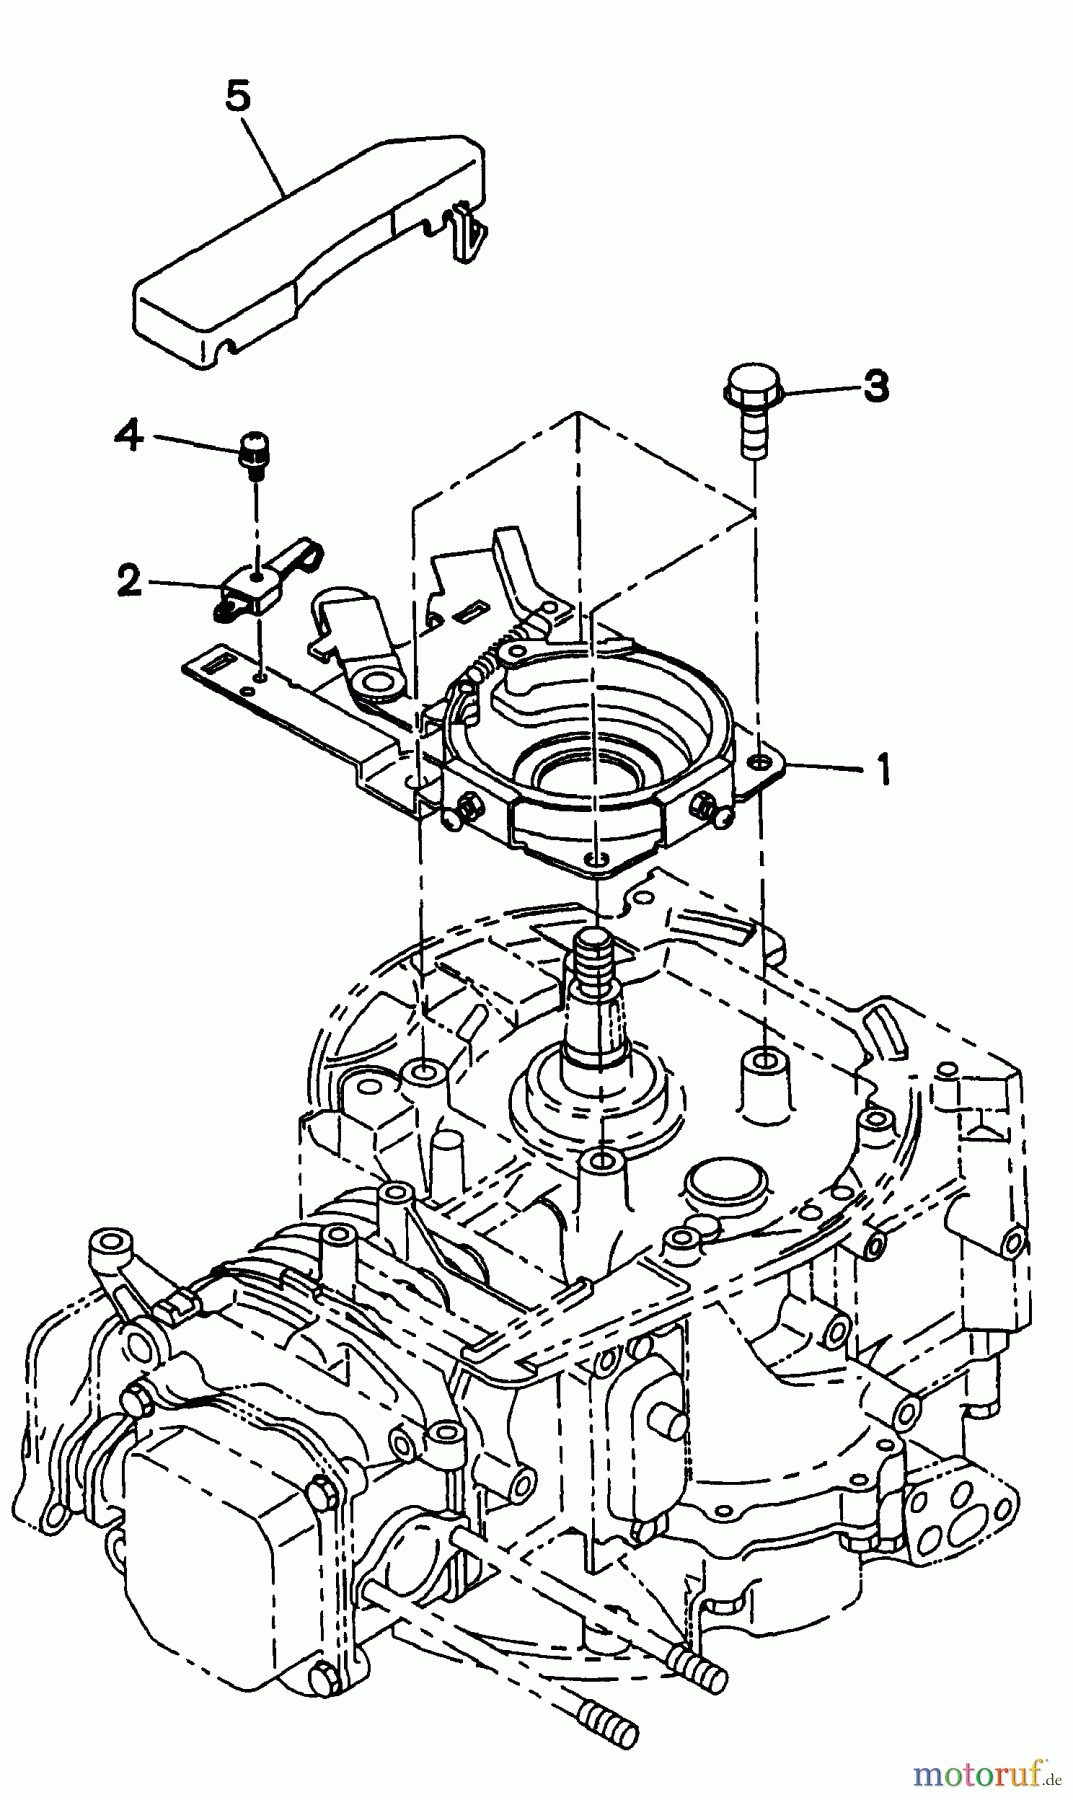  Snapper Motoren EH18V - Snapper 6.5 HP OHV Robin Engine, 4-Cycle Brake